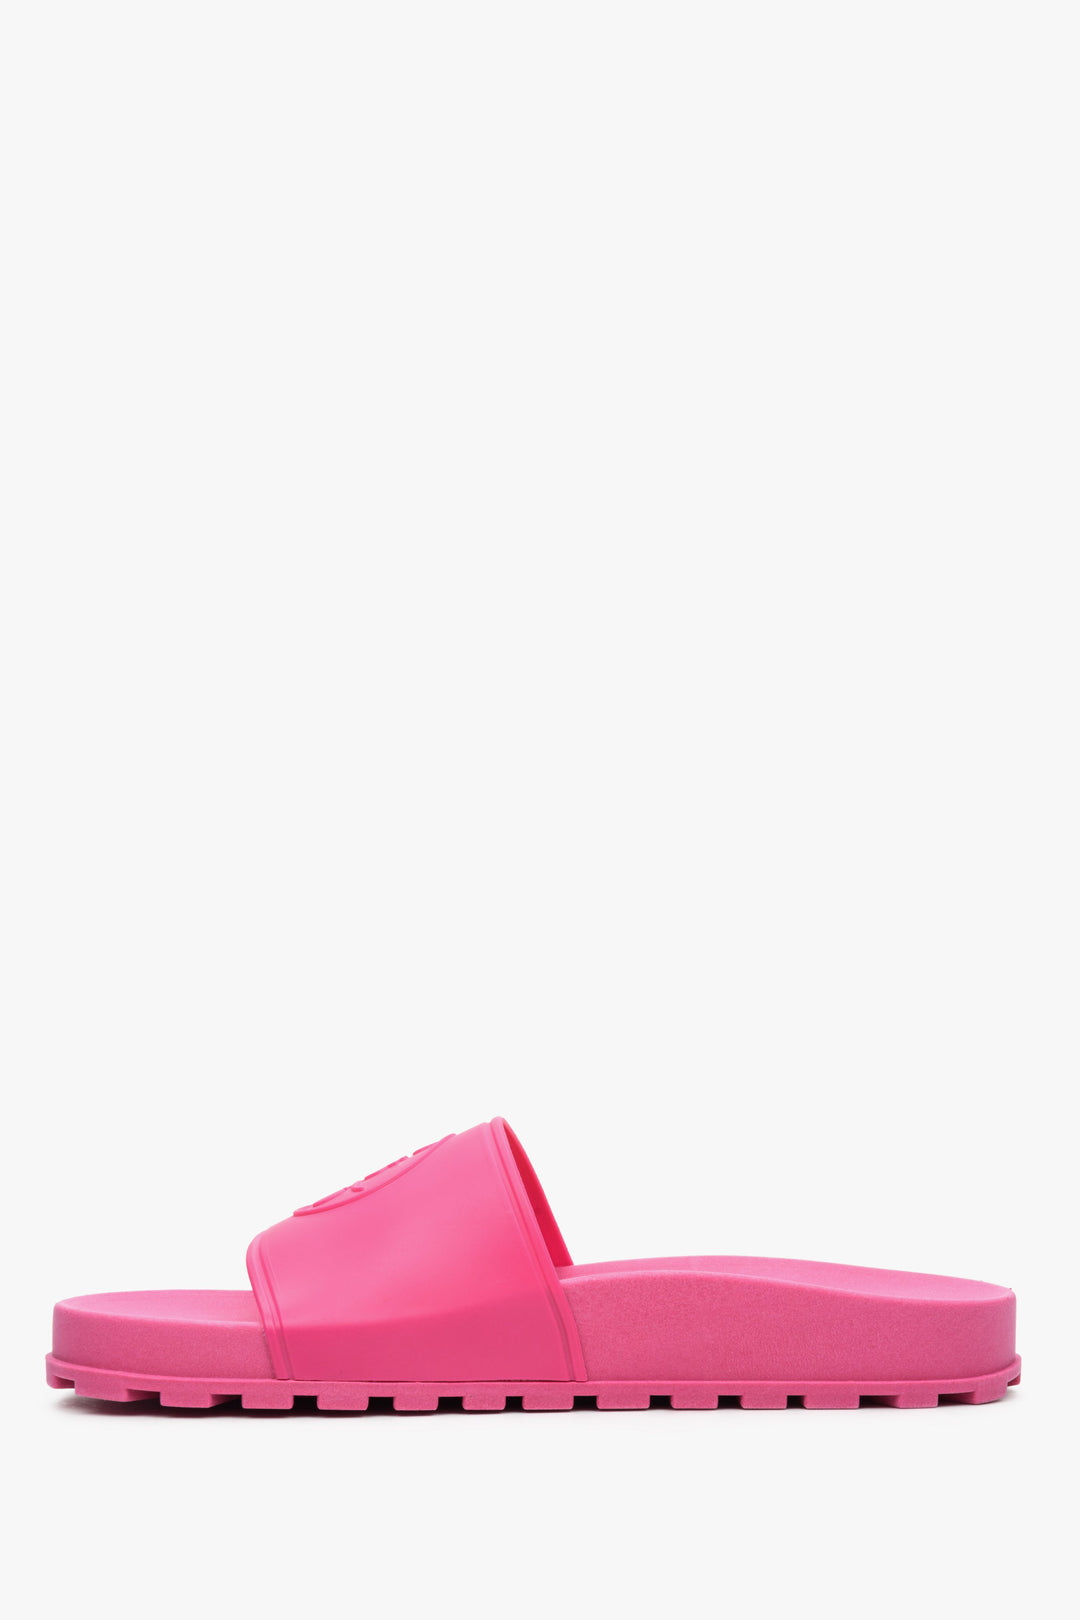 Różowe klapki damskie z gumy Estro - profil buta.